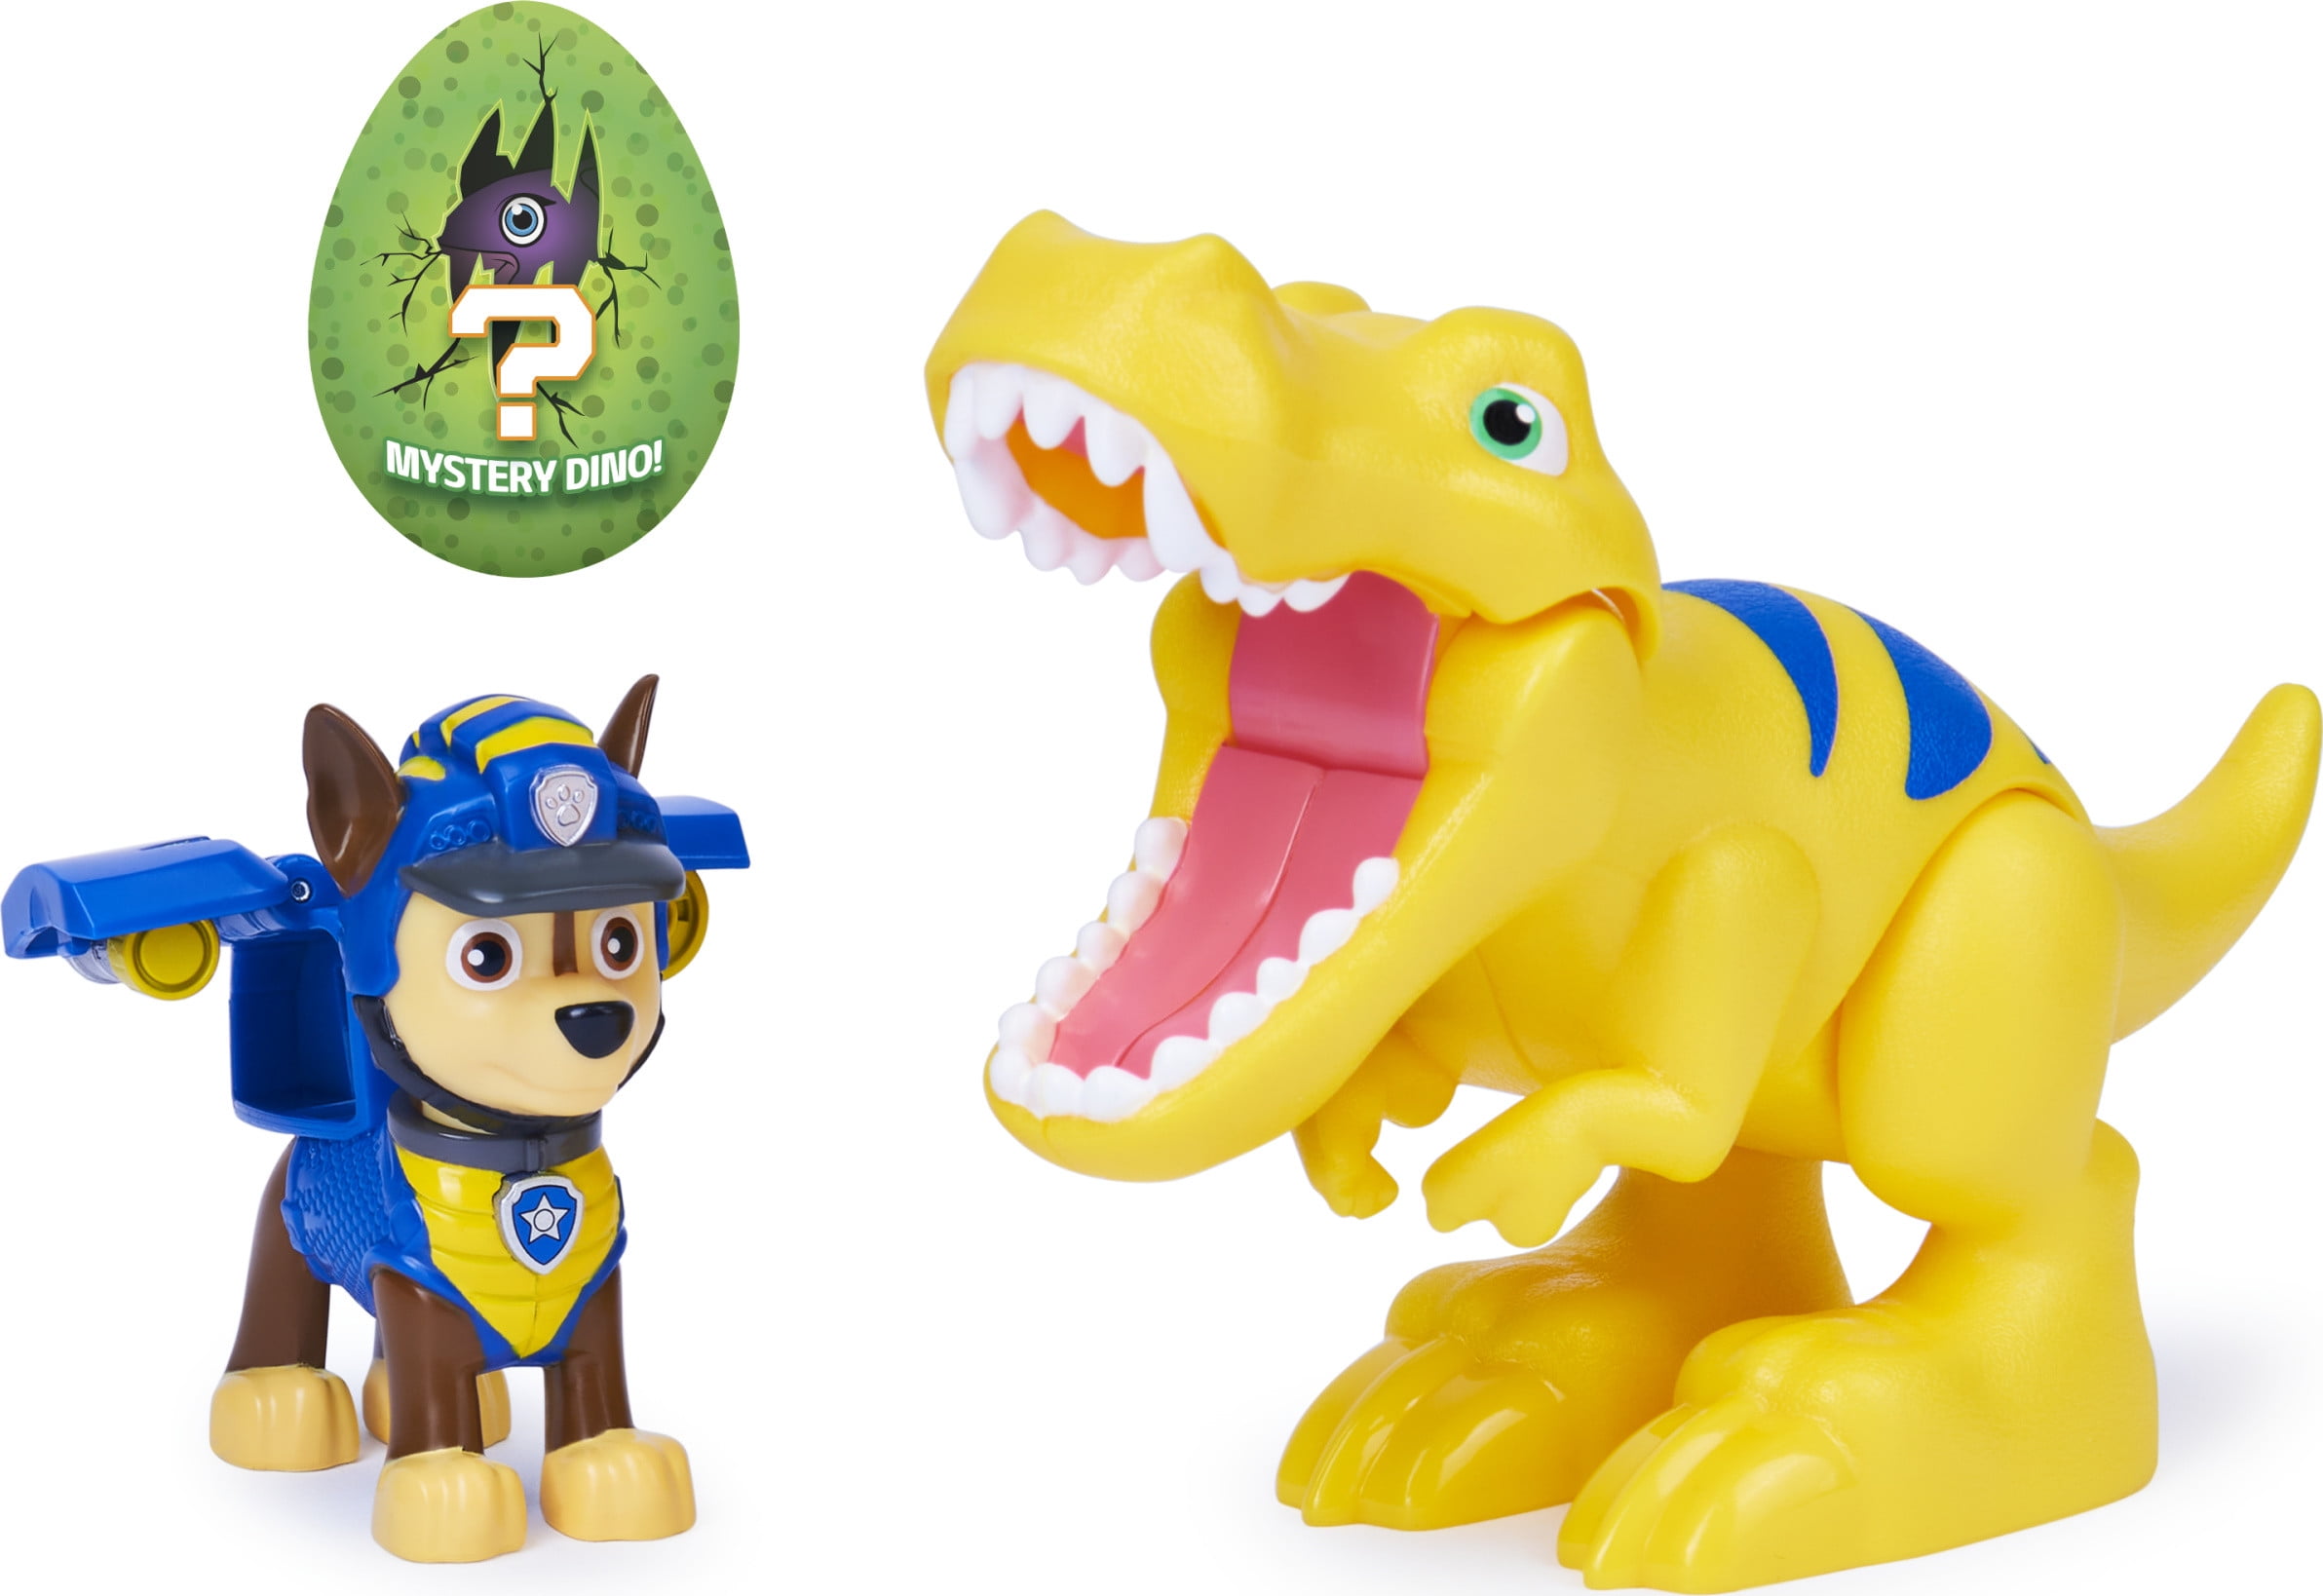 Paw Patrol Dino Rescue Set Kids Toys Birthday Gift 3 Dinosaur Mystery Dinosaur 